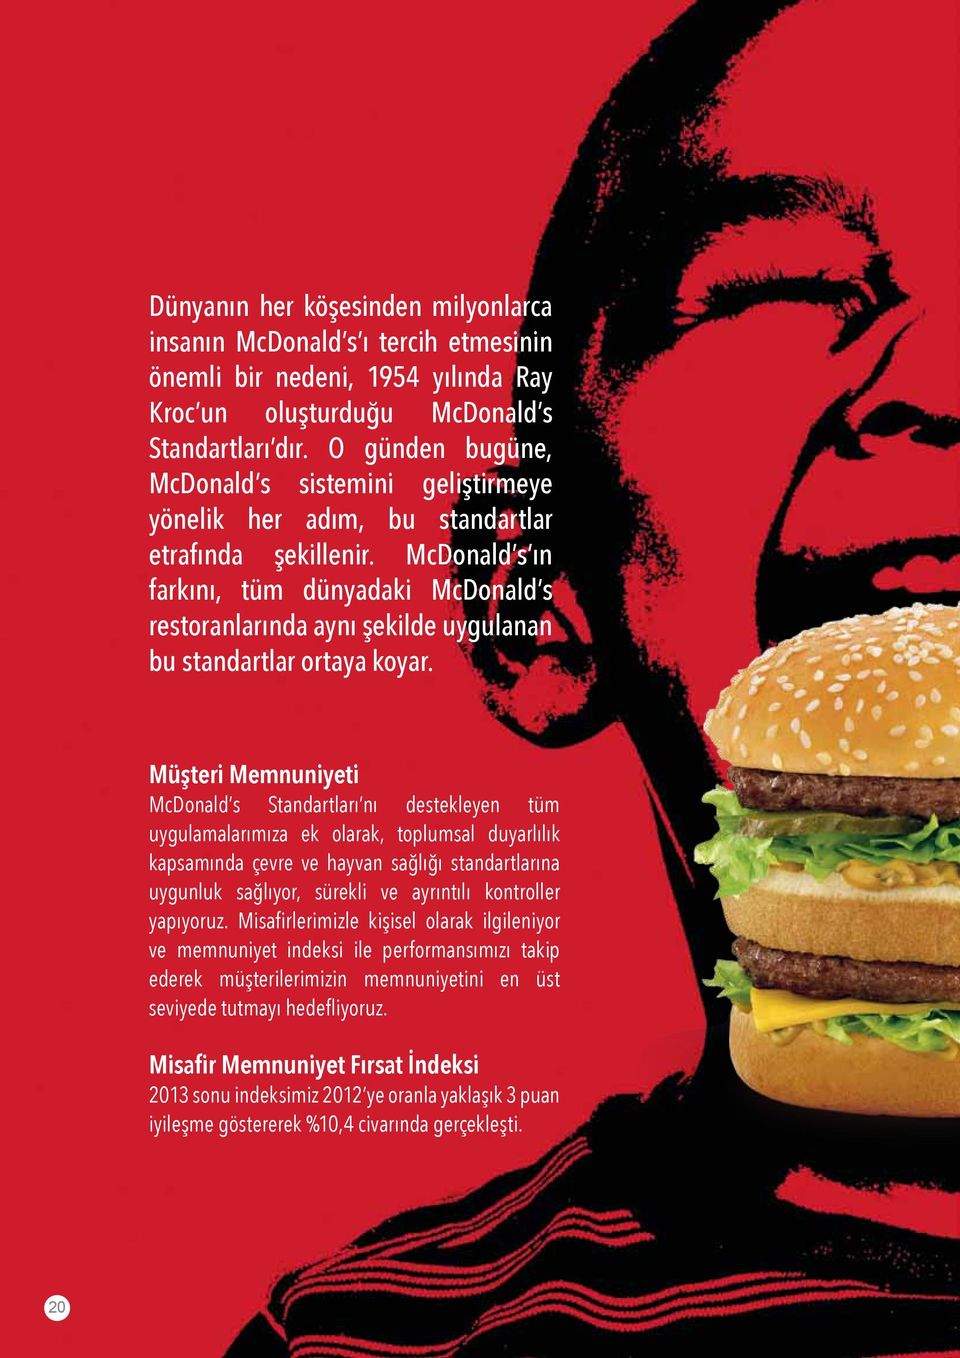 McDonald s ın farkını, tüm dünyadaki McDonald s restoranlarında aynı şekilde uygulanan bu standartlar ortaya koyar.